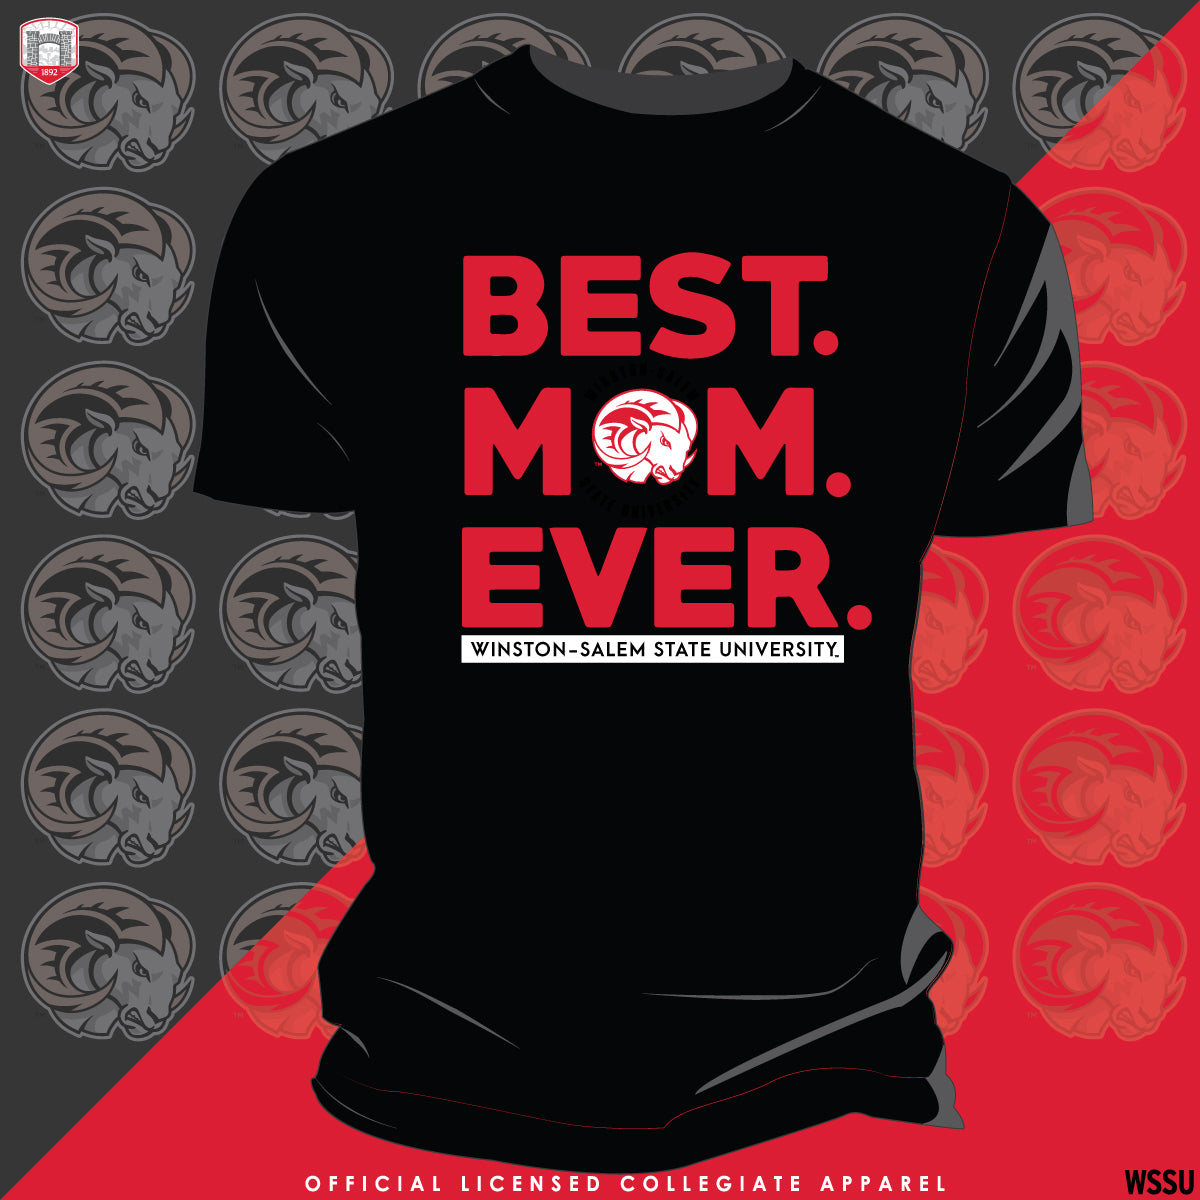 WSSU | Best "MOM" Ever Black Unisex Tees (N)